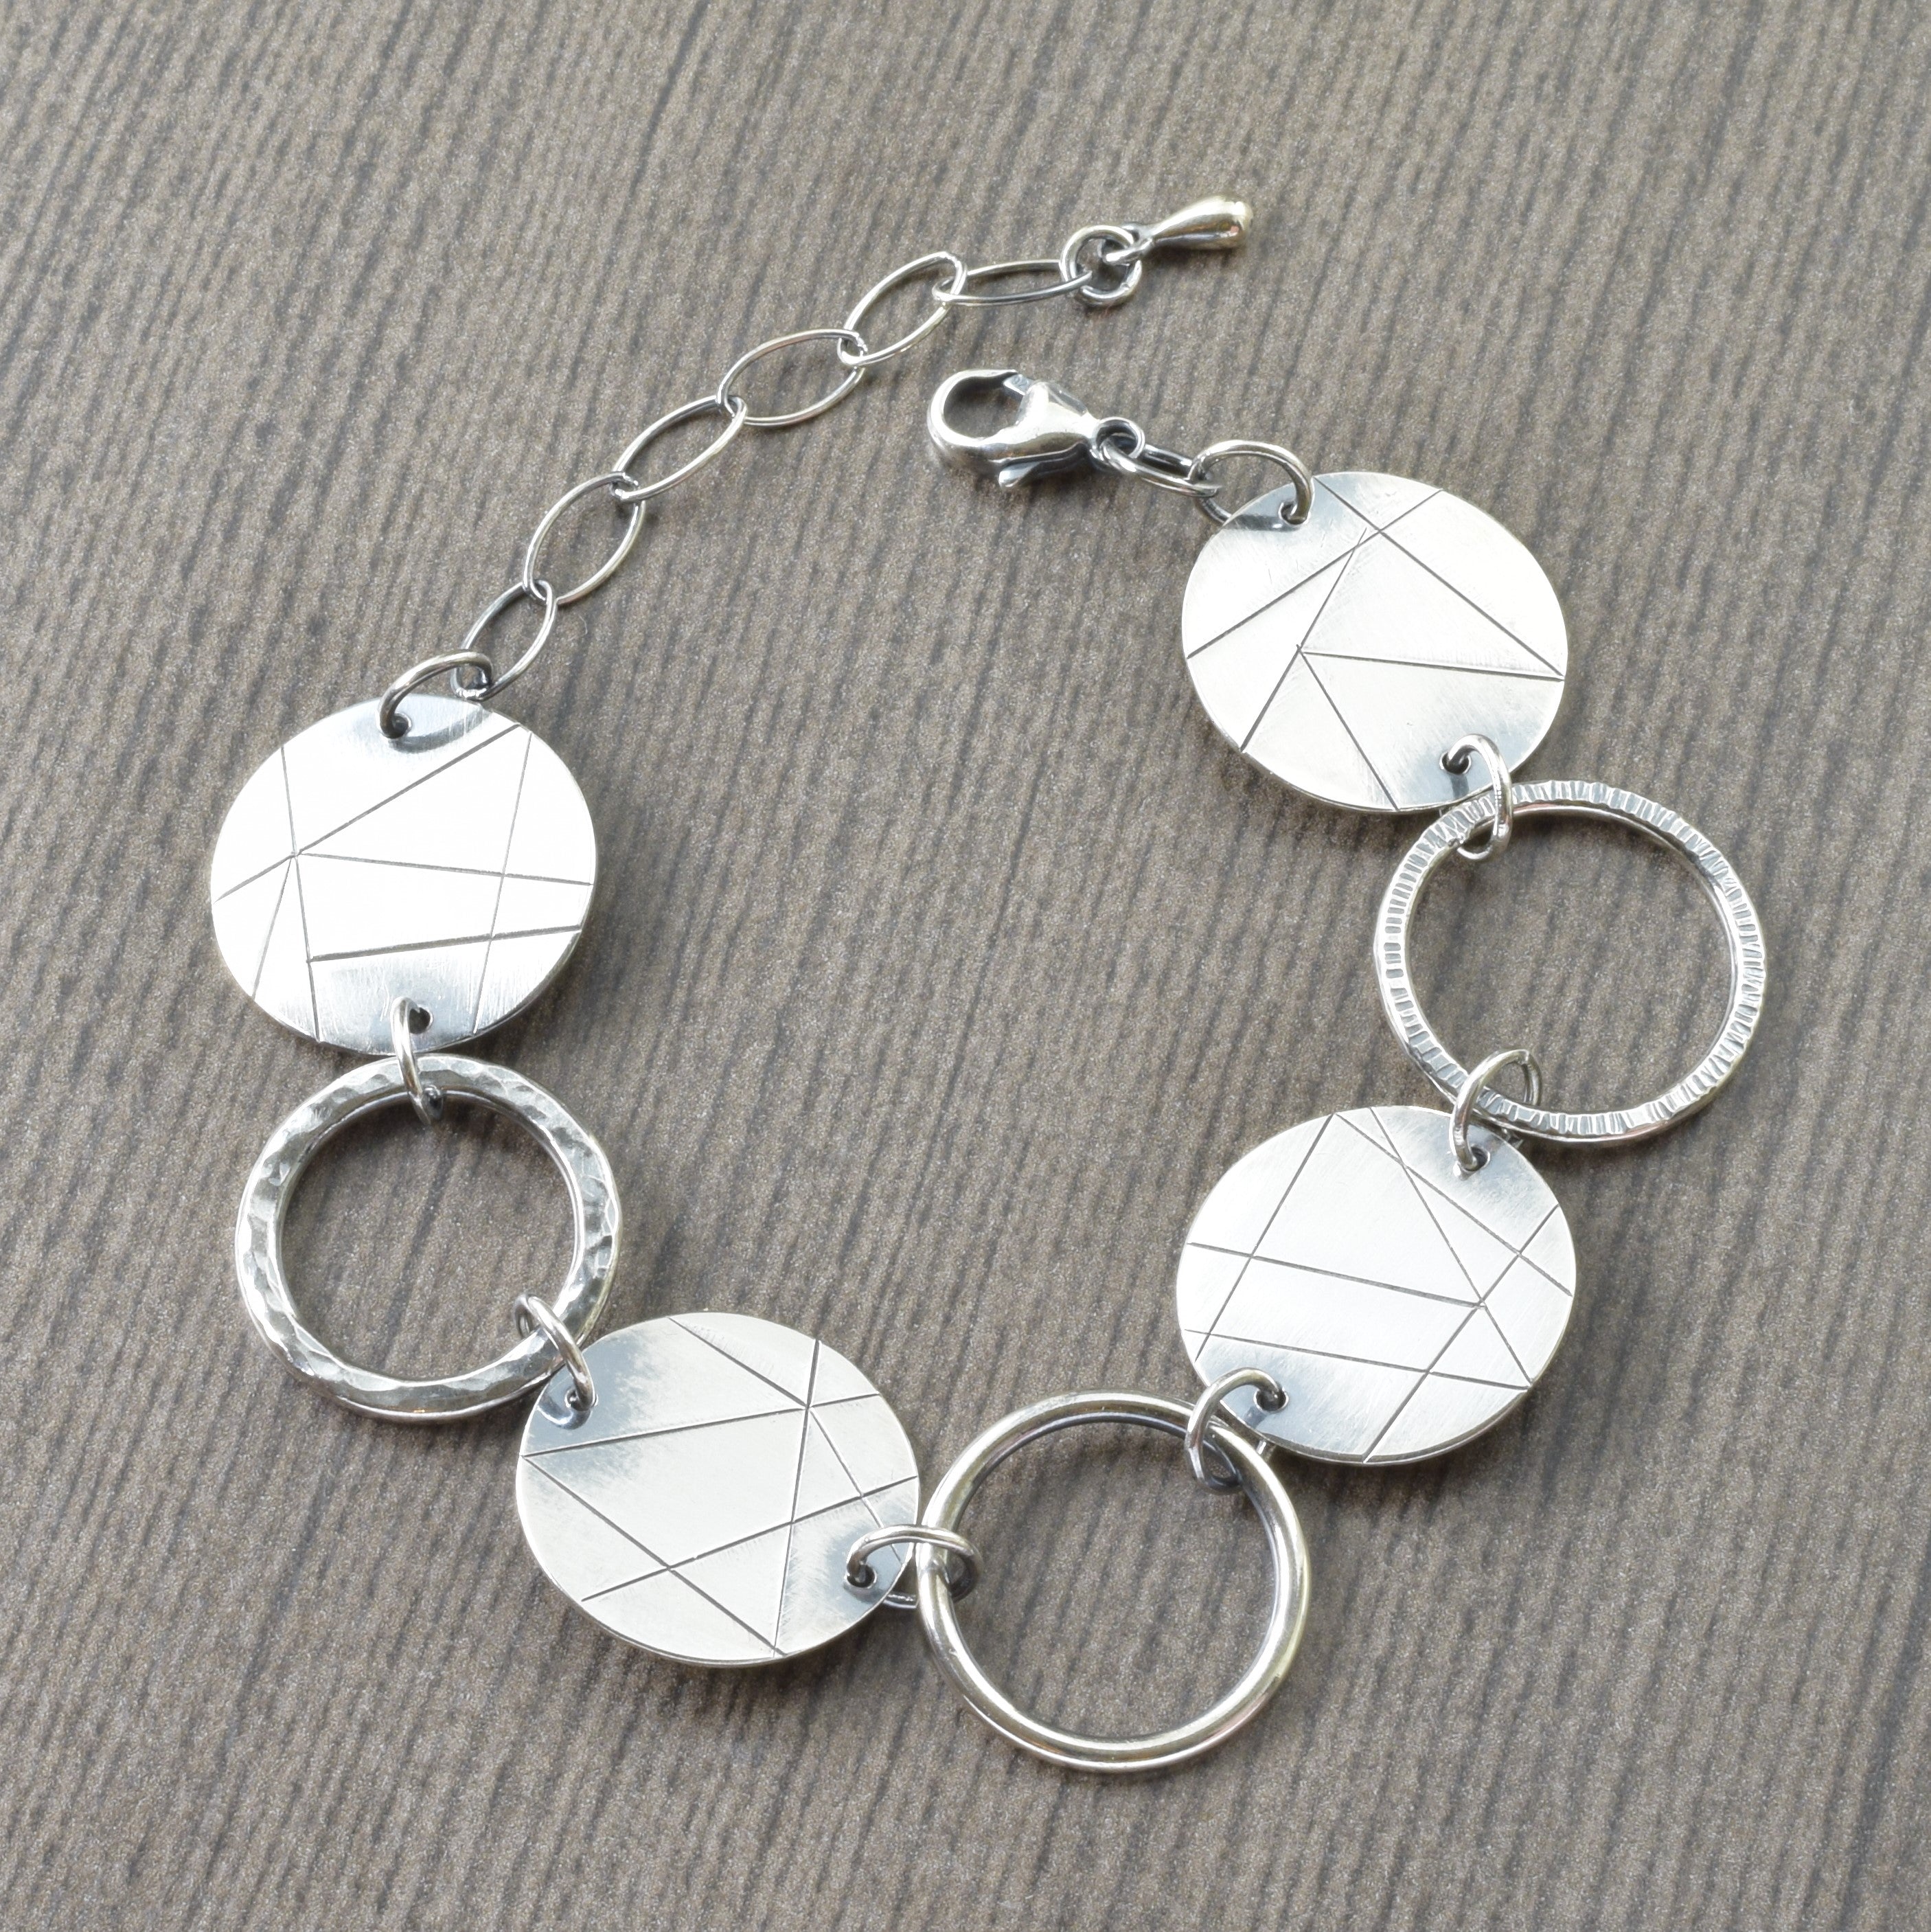 Modern linear Sterling silver geometric statement bracelet